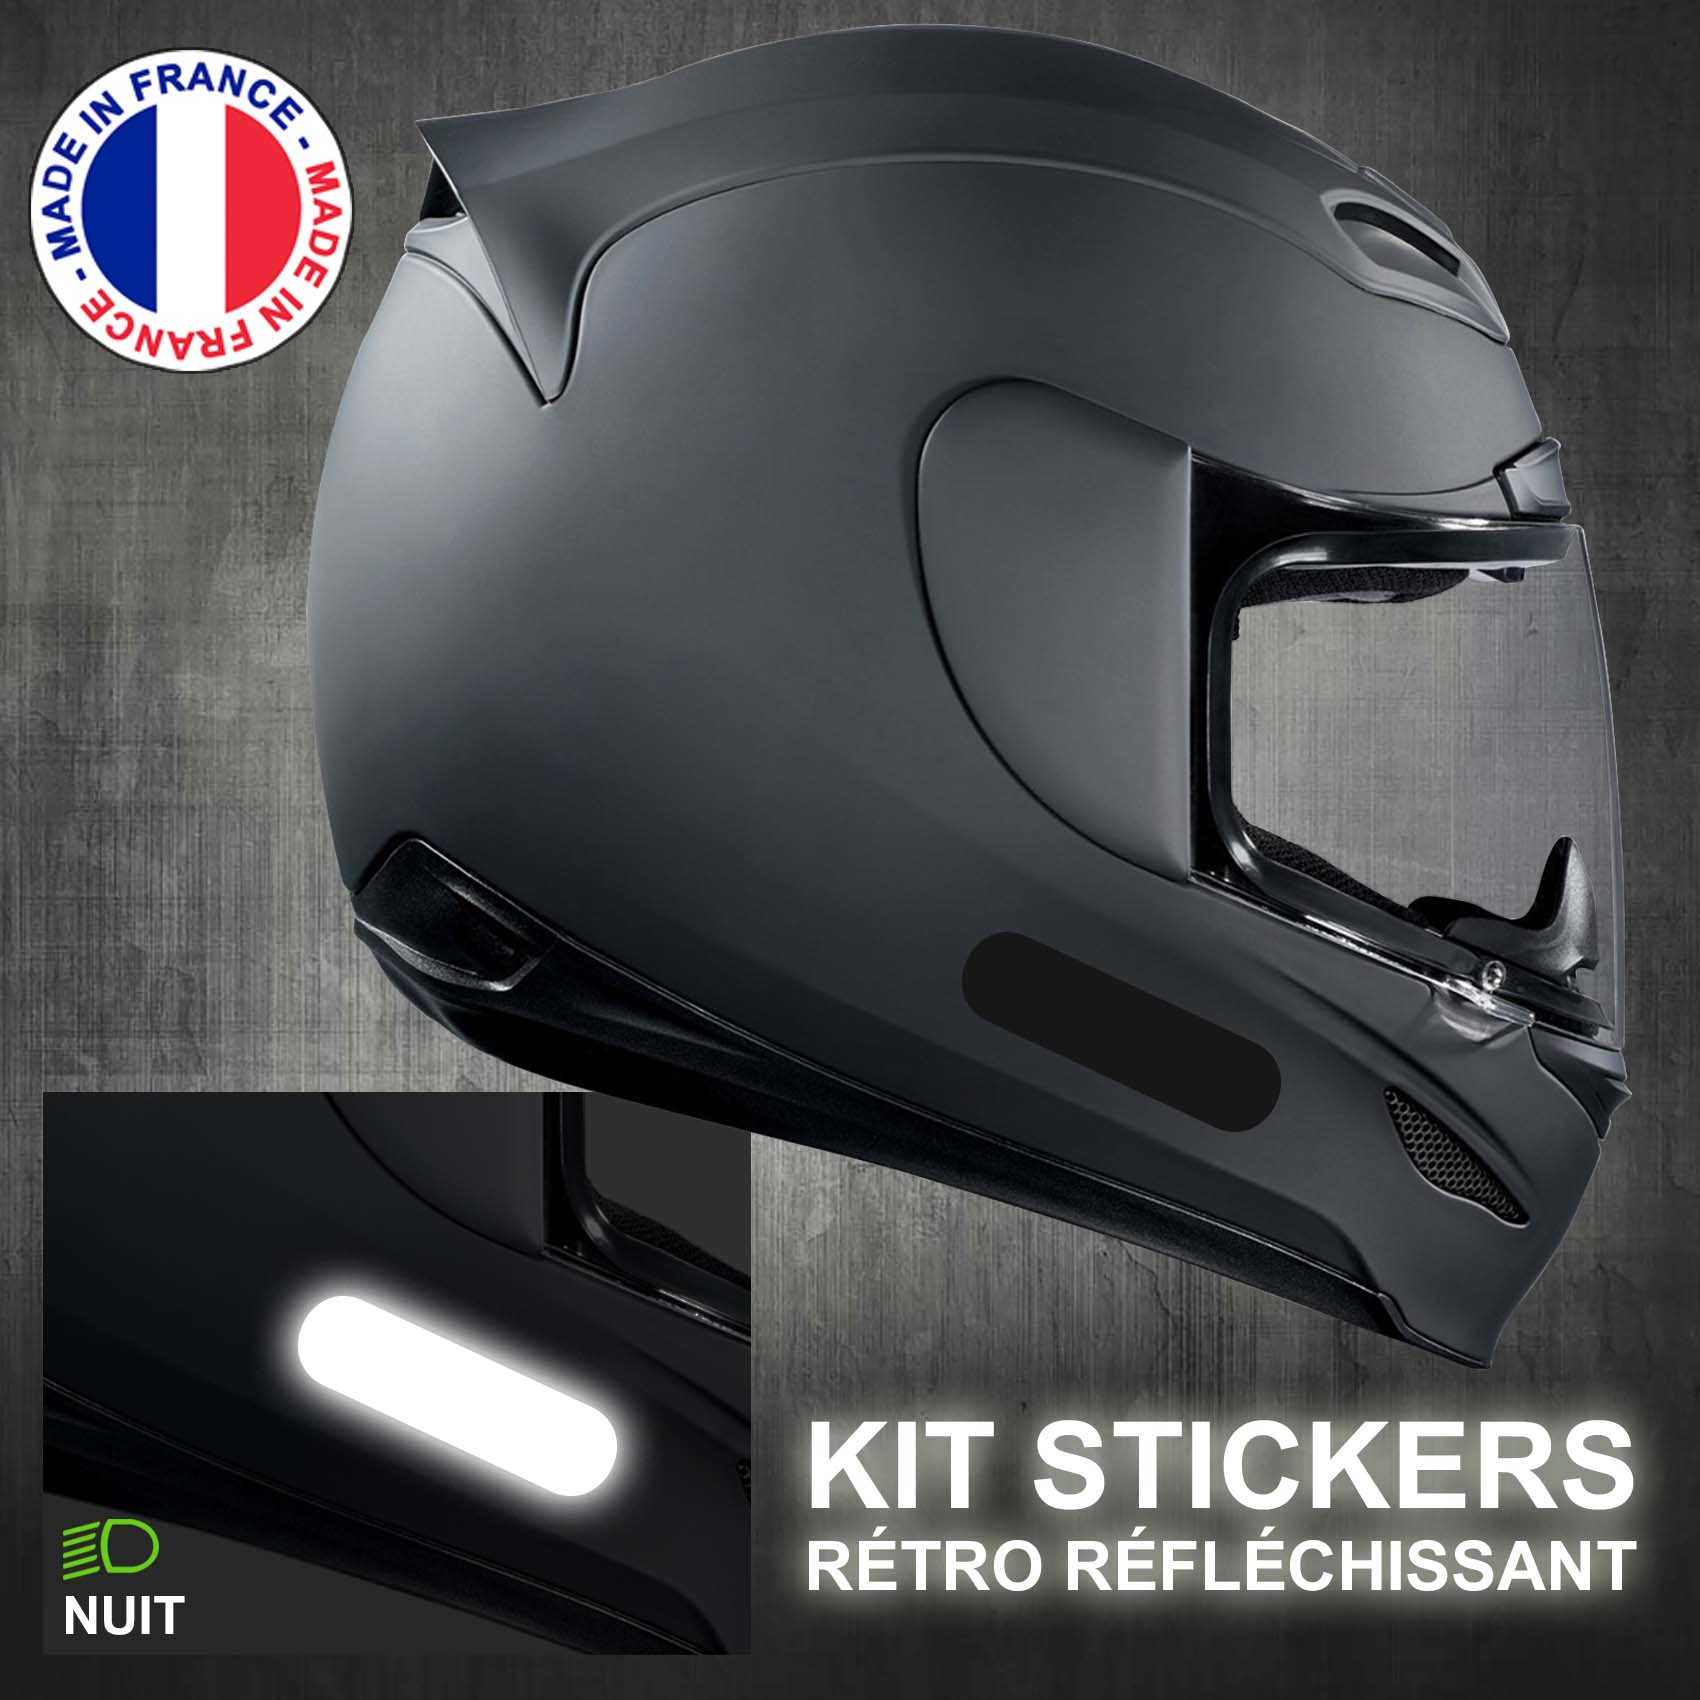 Stickers Reflechissant Noir - 4 Bandes Standard pour Casque Moto